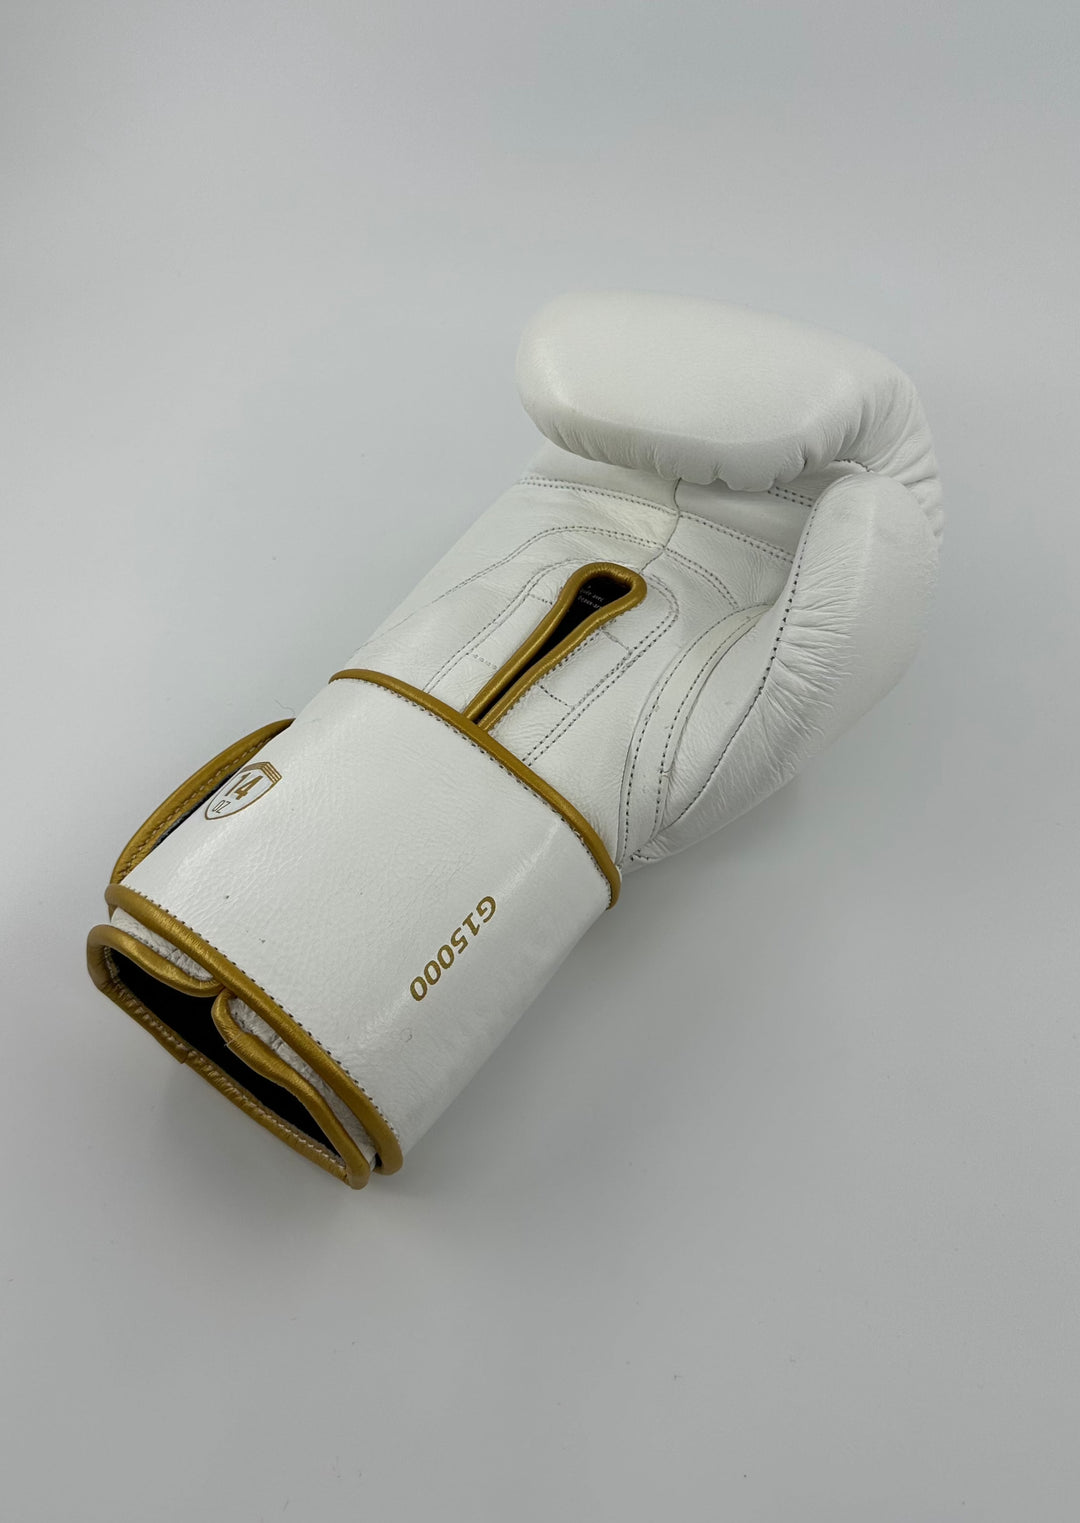 G15000 Boxing Gloves - WHITE/GOLD